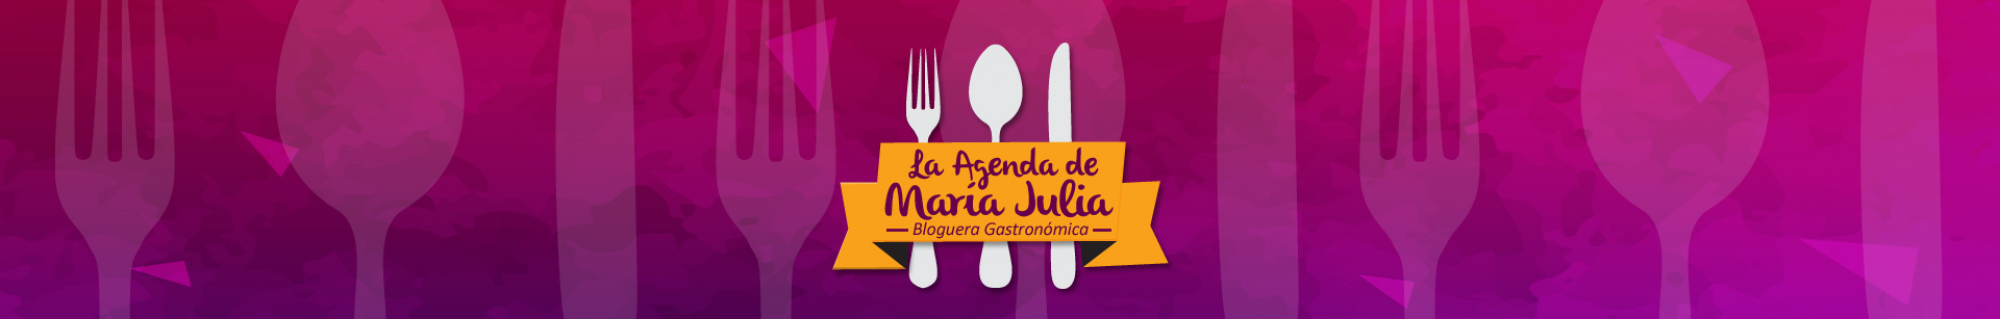 La agenda de Maria Julia